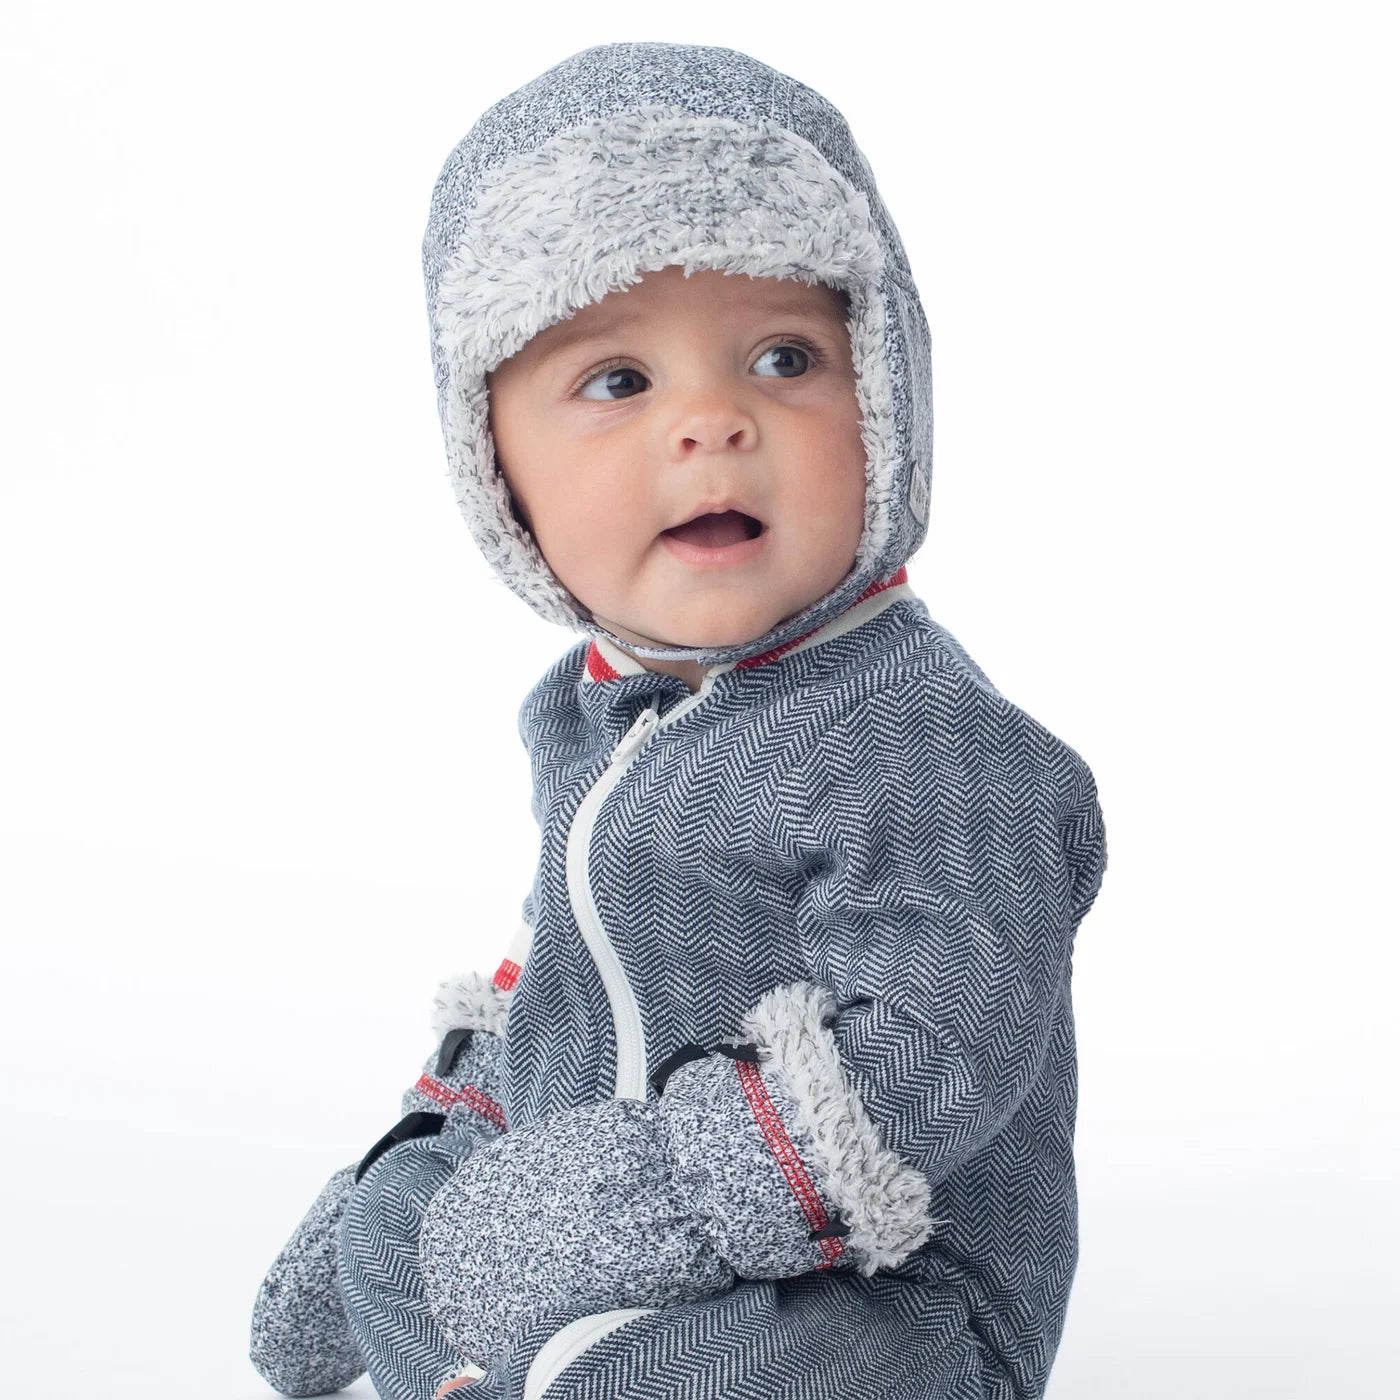 Baby WInter Hat: Salt & Pepper Grey